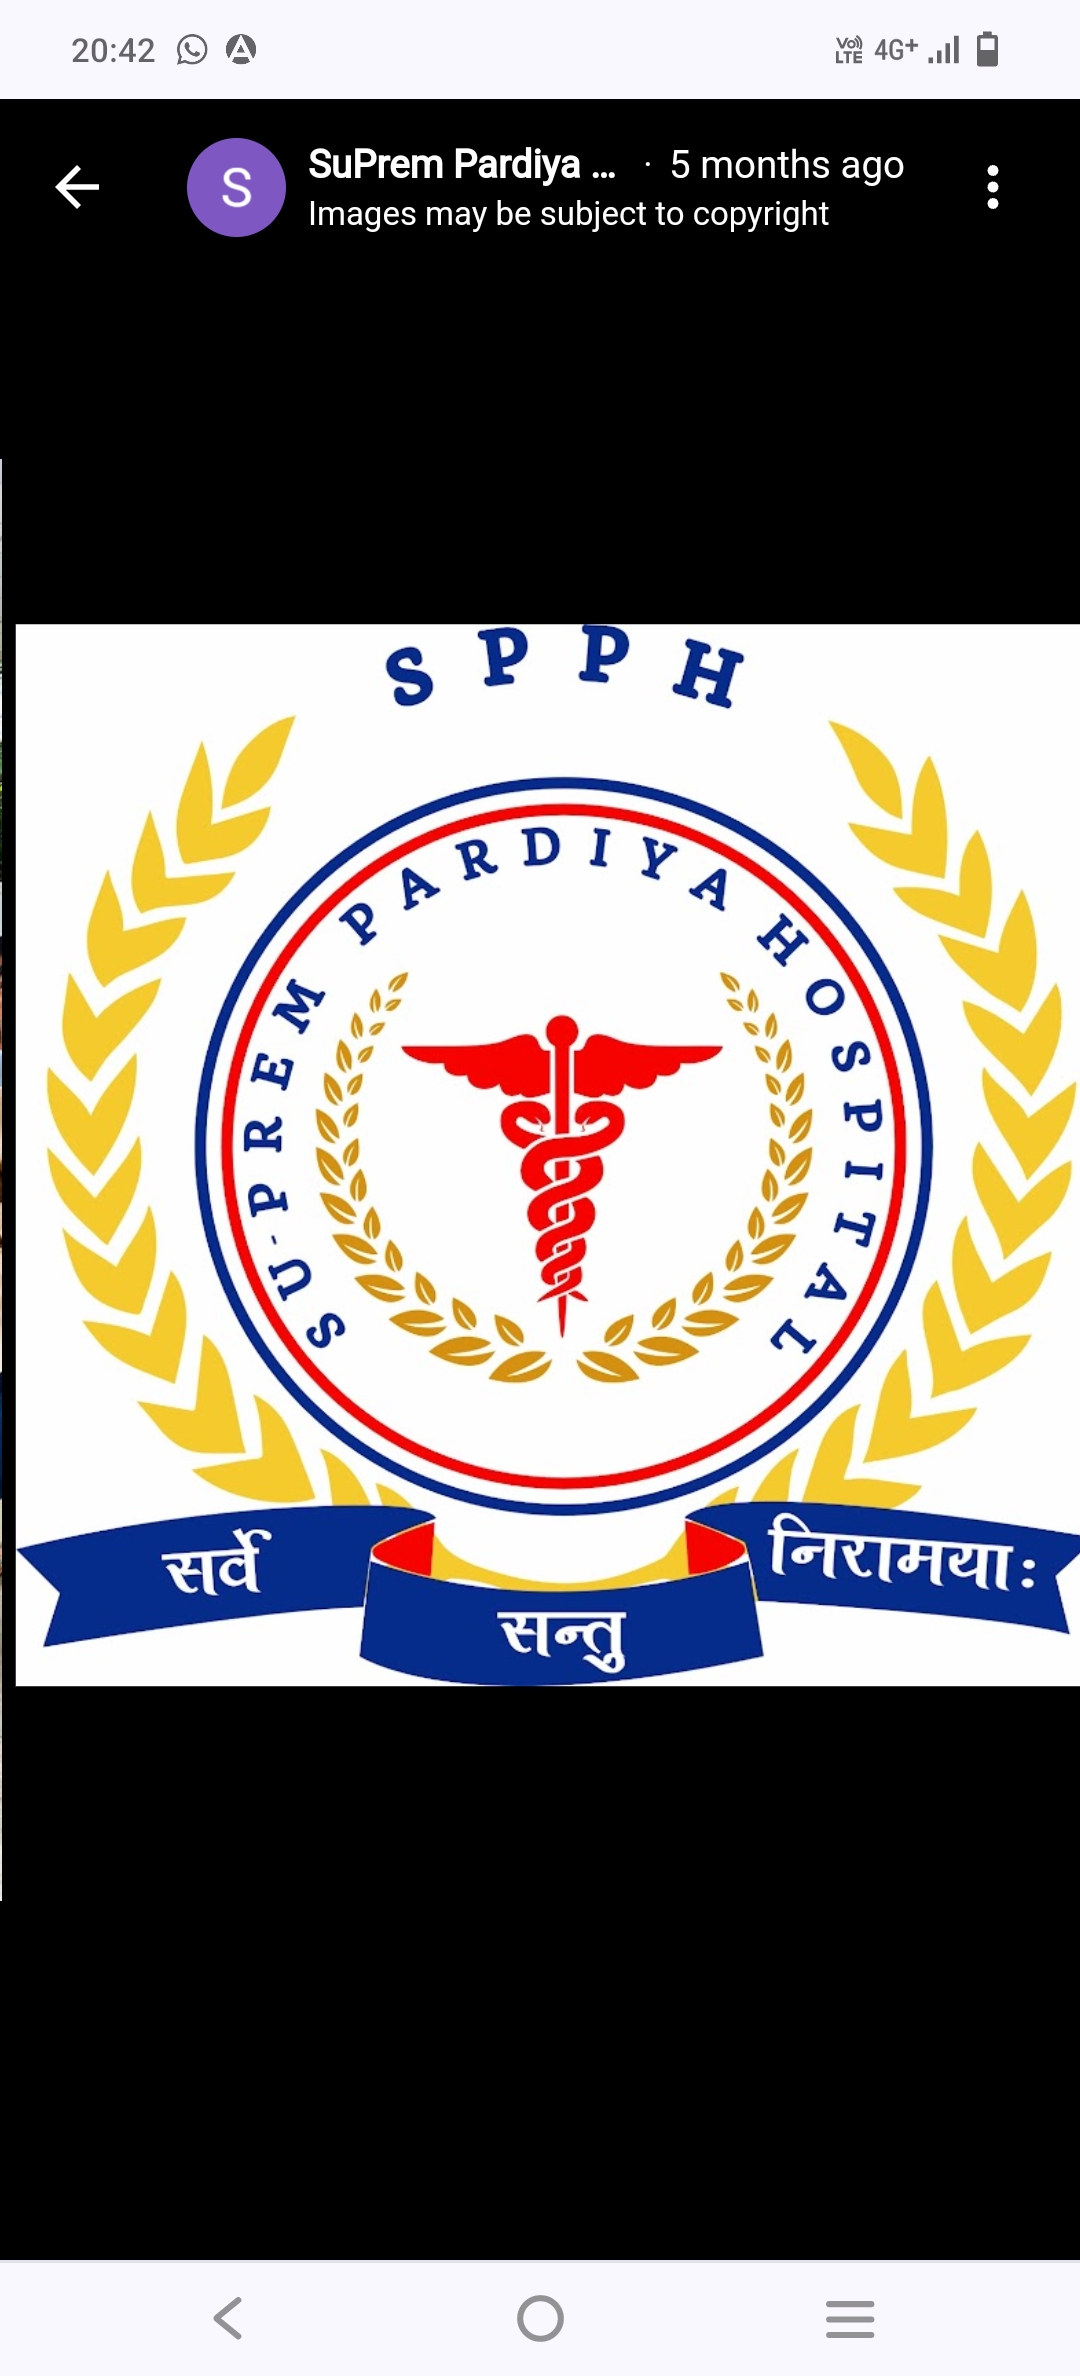 Suprem Pardiya Hospital  - 279